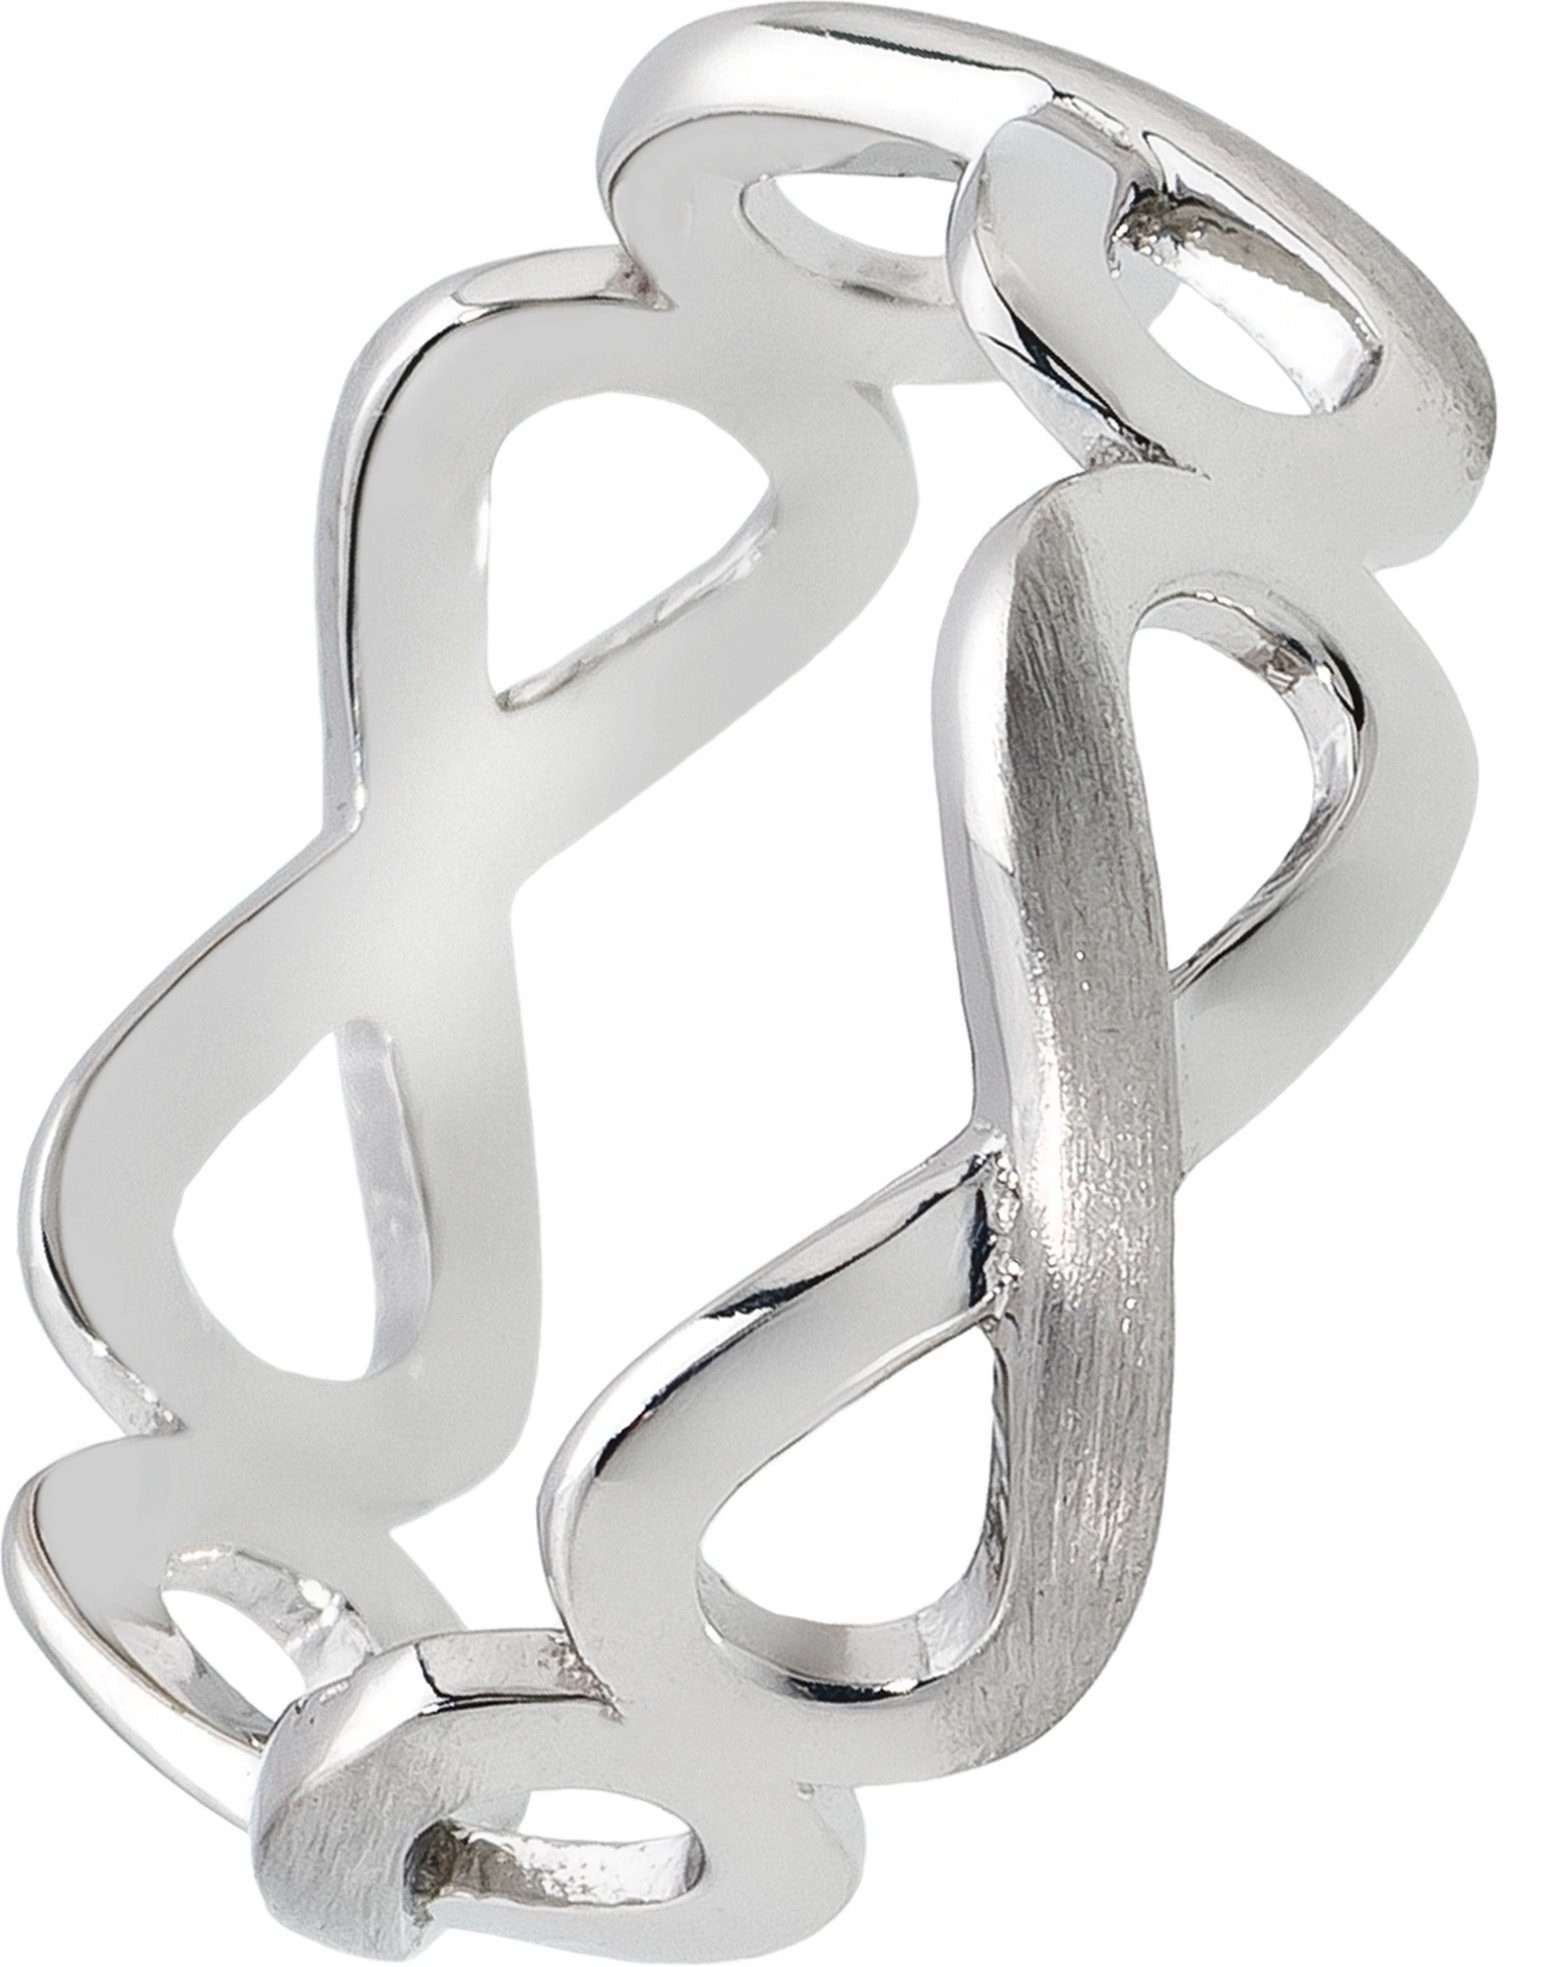 Balia Silberring Balia Ring für Damen Silber 925 (Fingerring), Damen Ring Unendlichkeit, 52 (16,6), 925 Sterling Silber